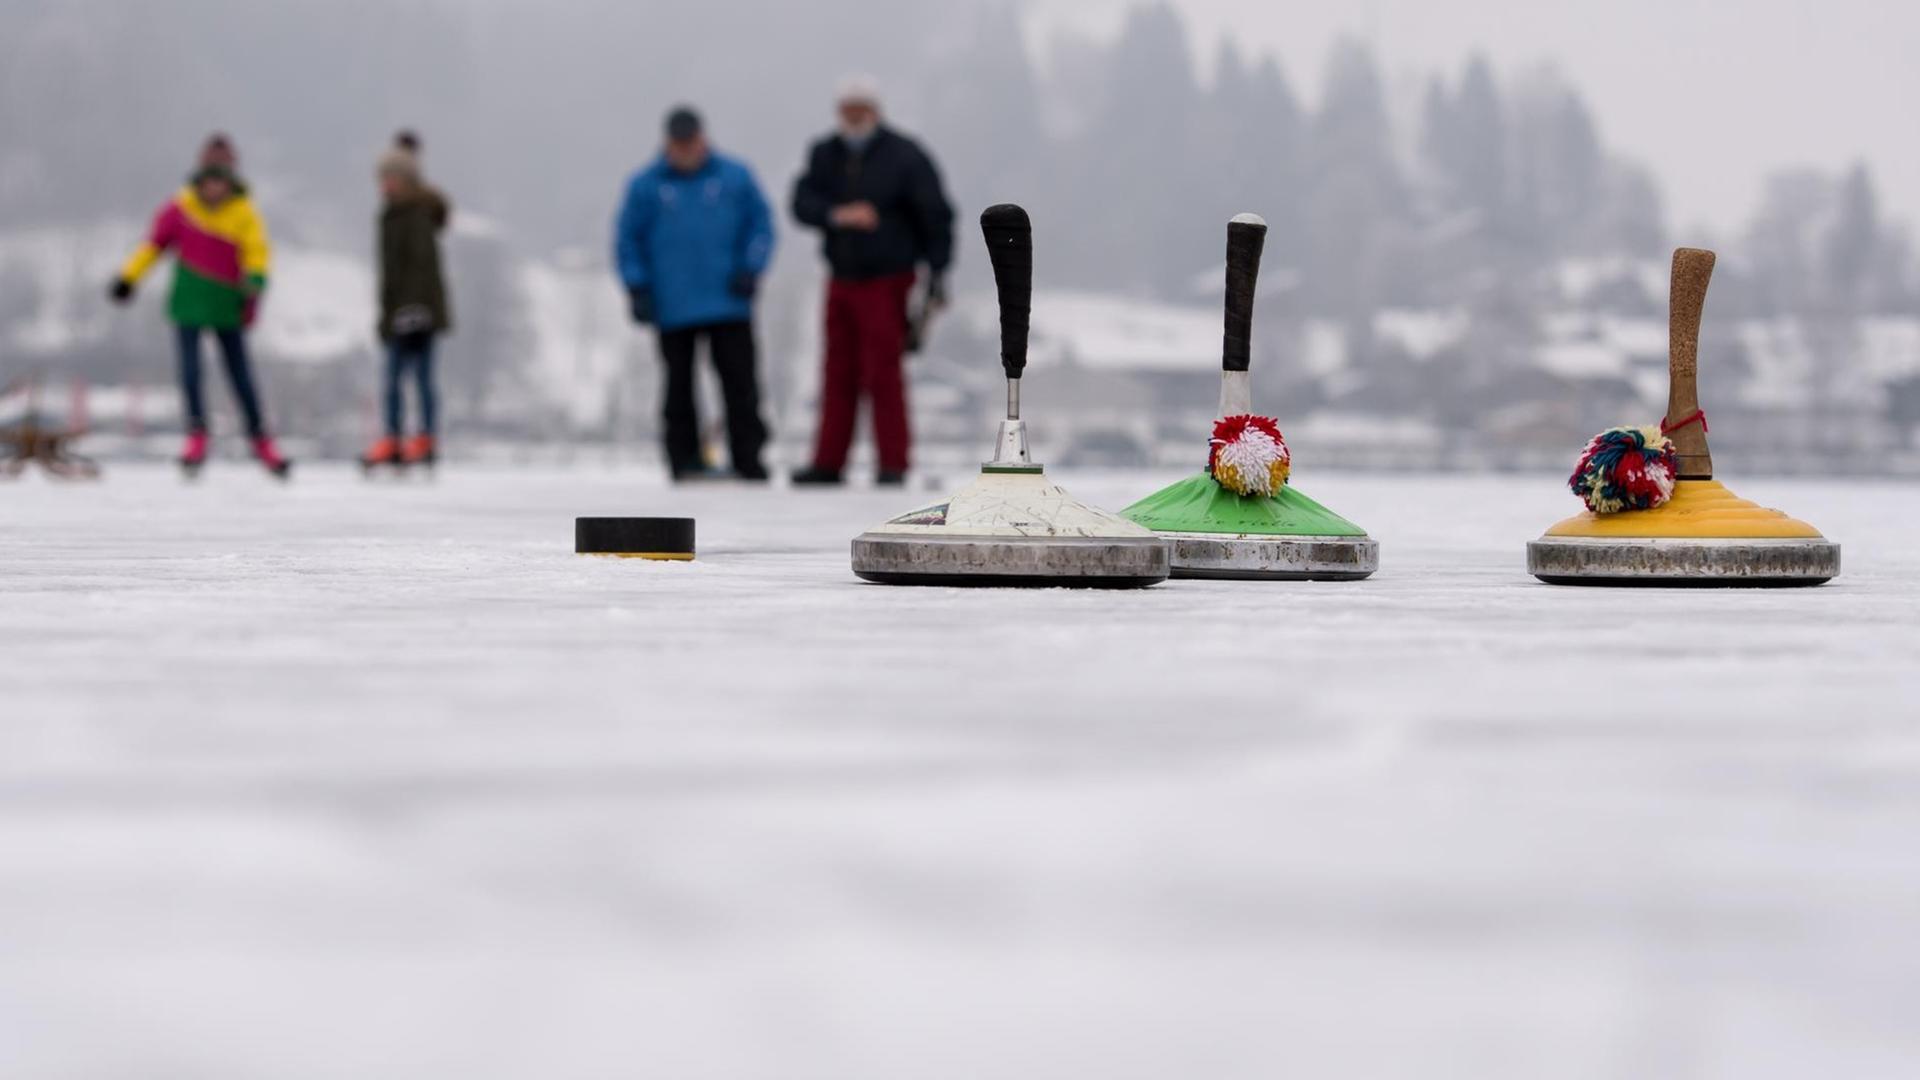 Ausflügler spielen am 24.01.2017 in Schliersee in Bayern auf dem zugefrorenen Schliersee Eisstockschießen.